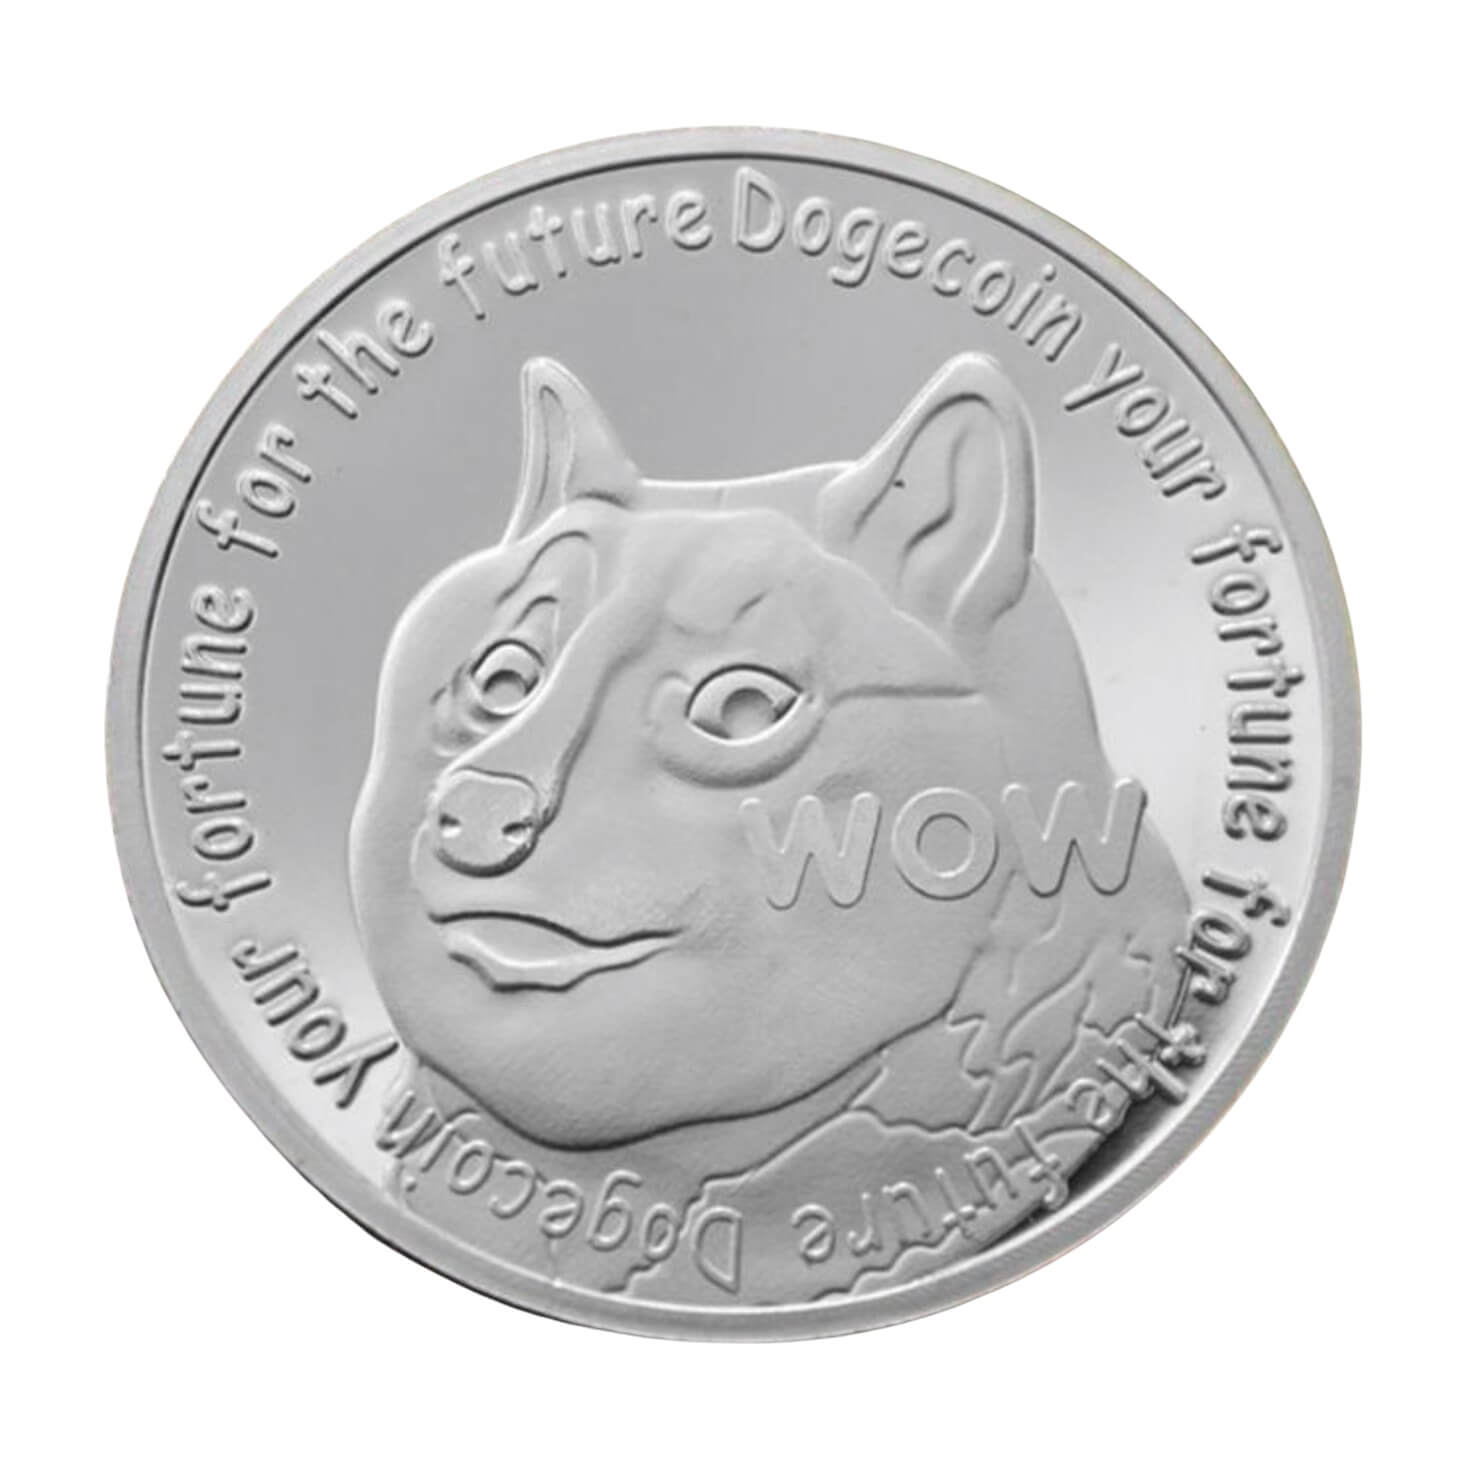 dogecoin coin silver